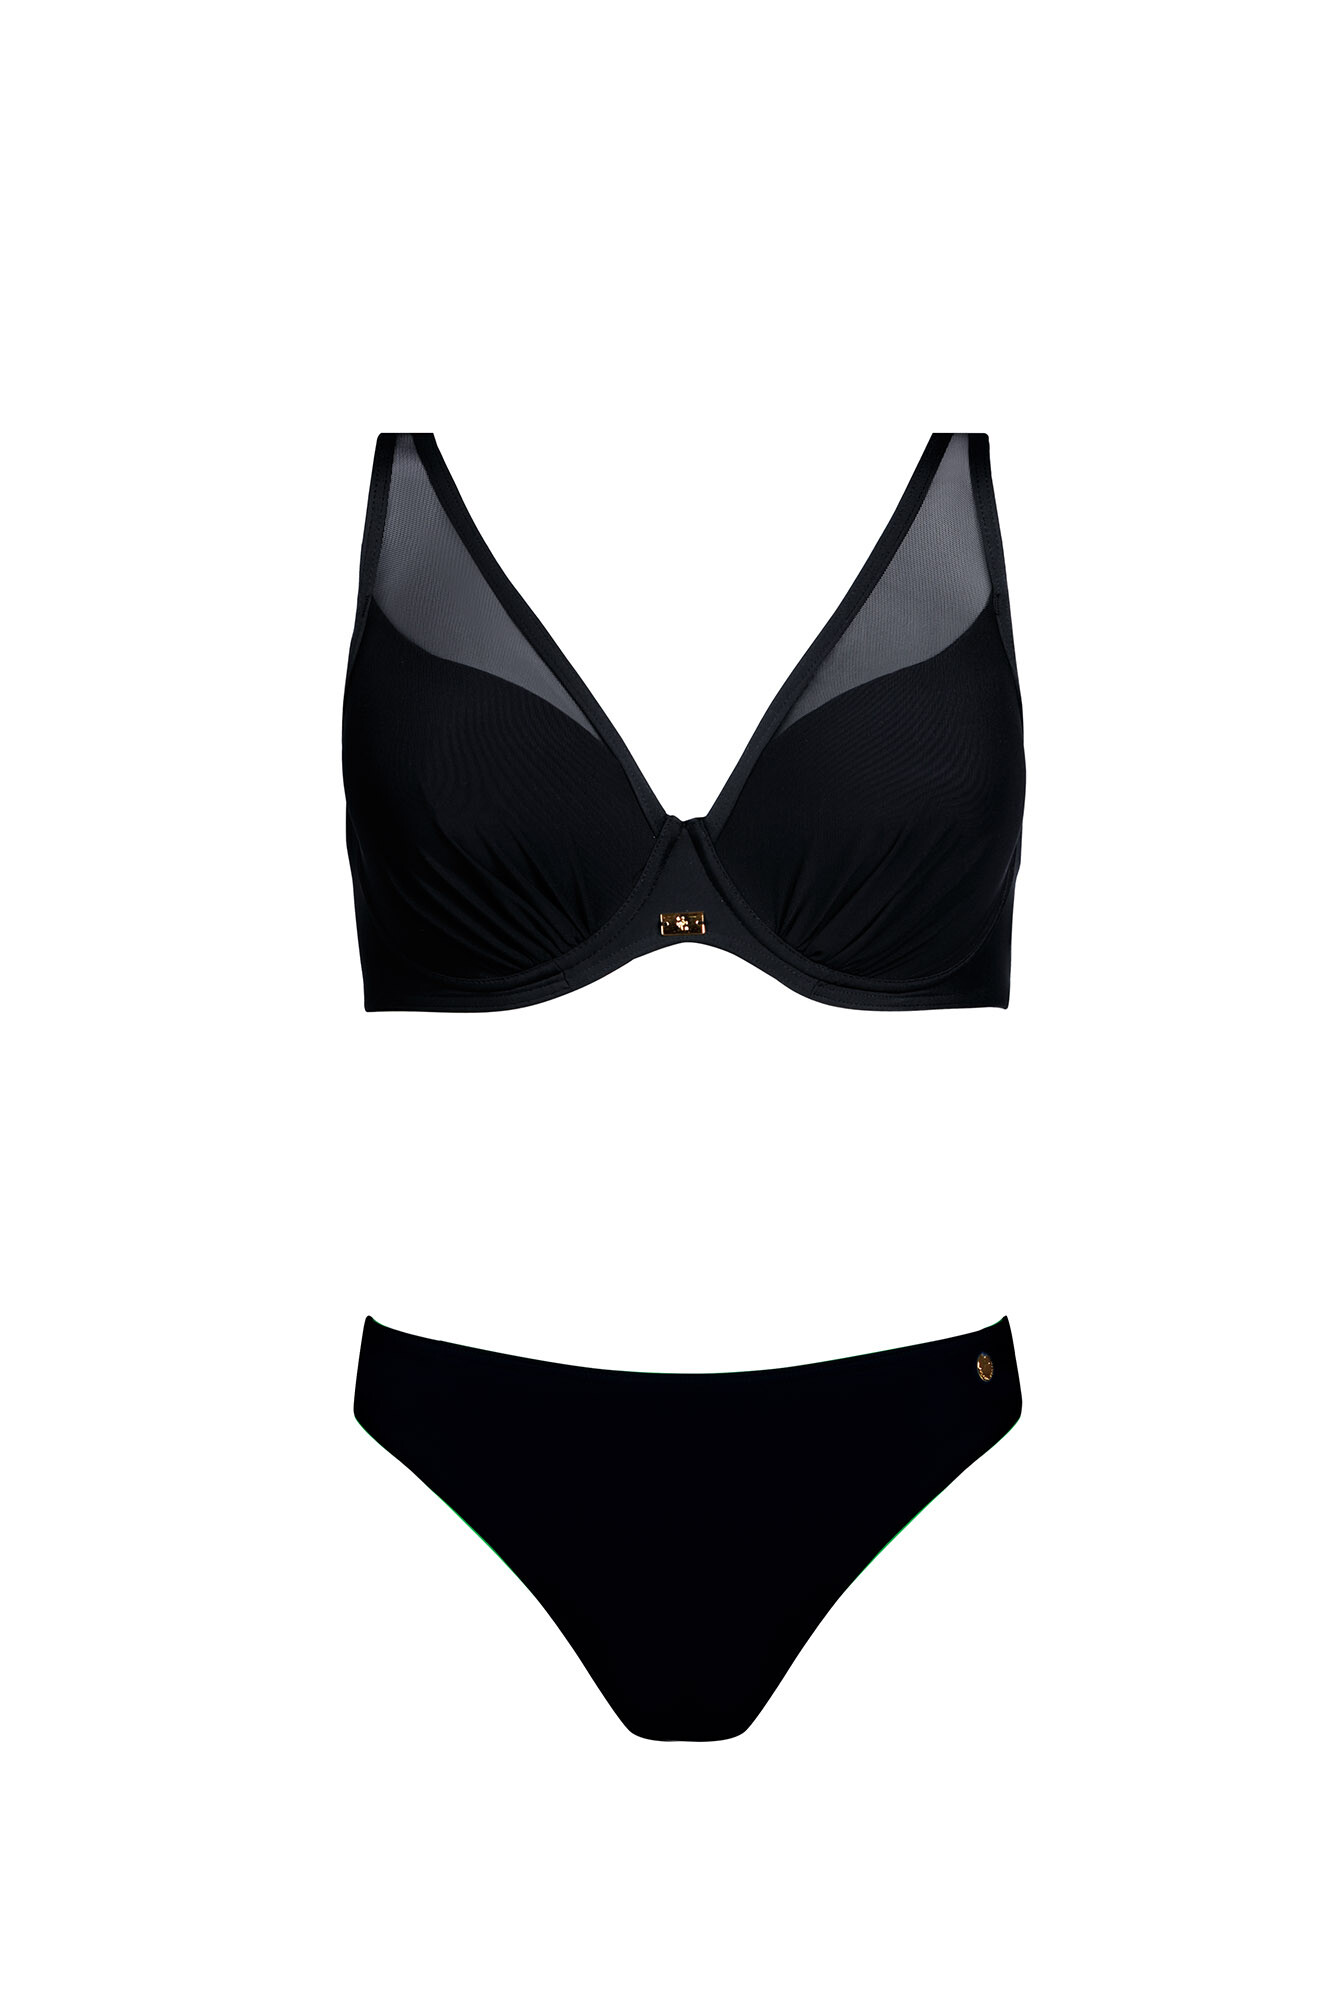 Dámské dvoudílné plavky Fashion 39 S940V39-19 černé - Self 46F